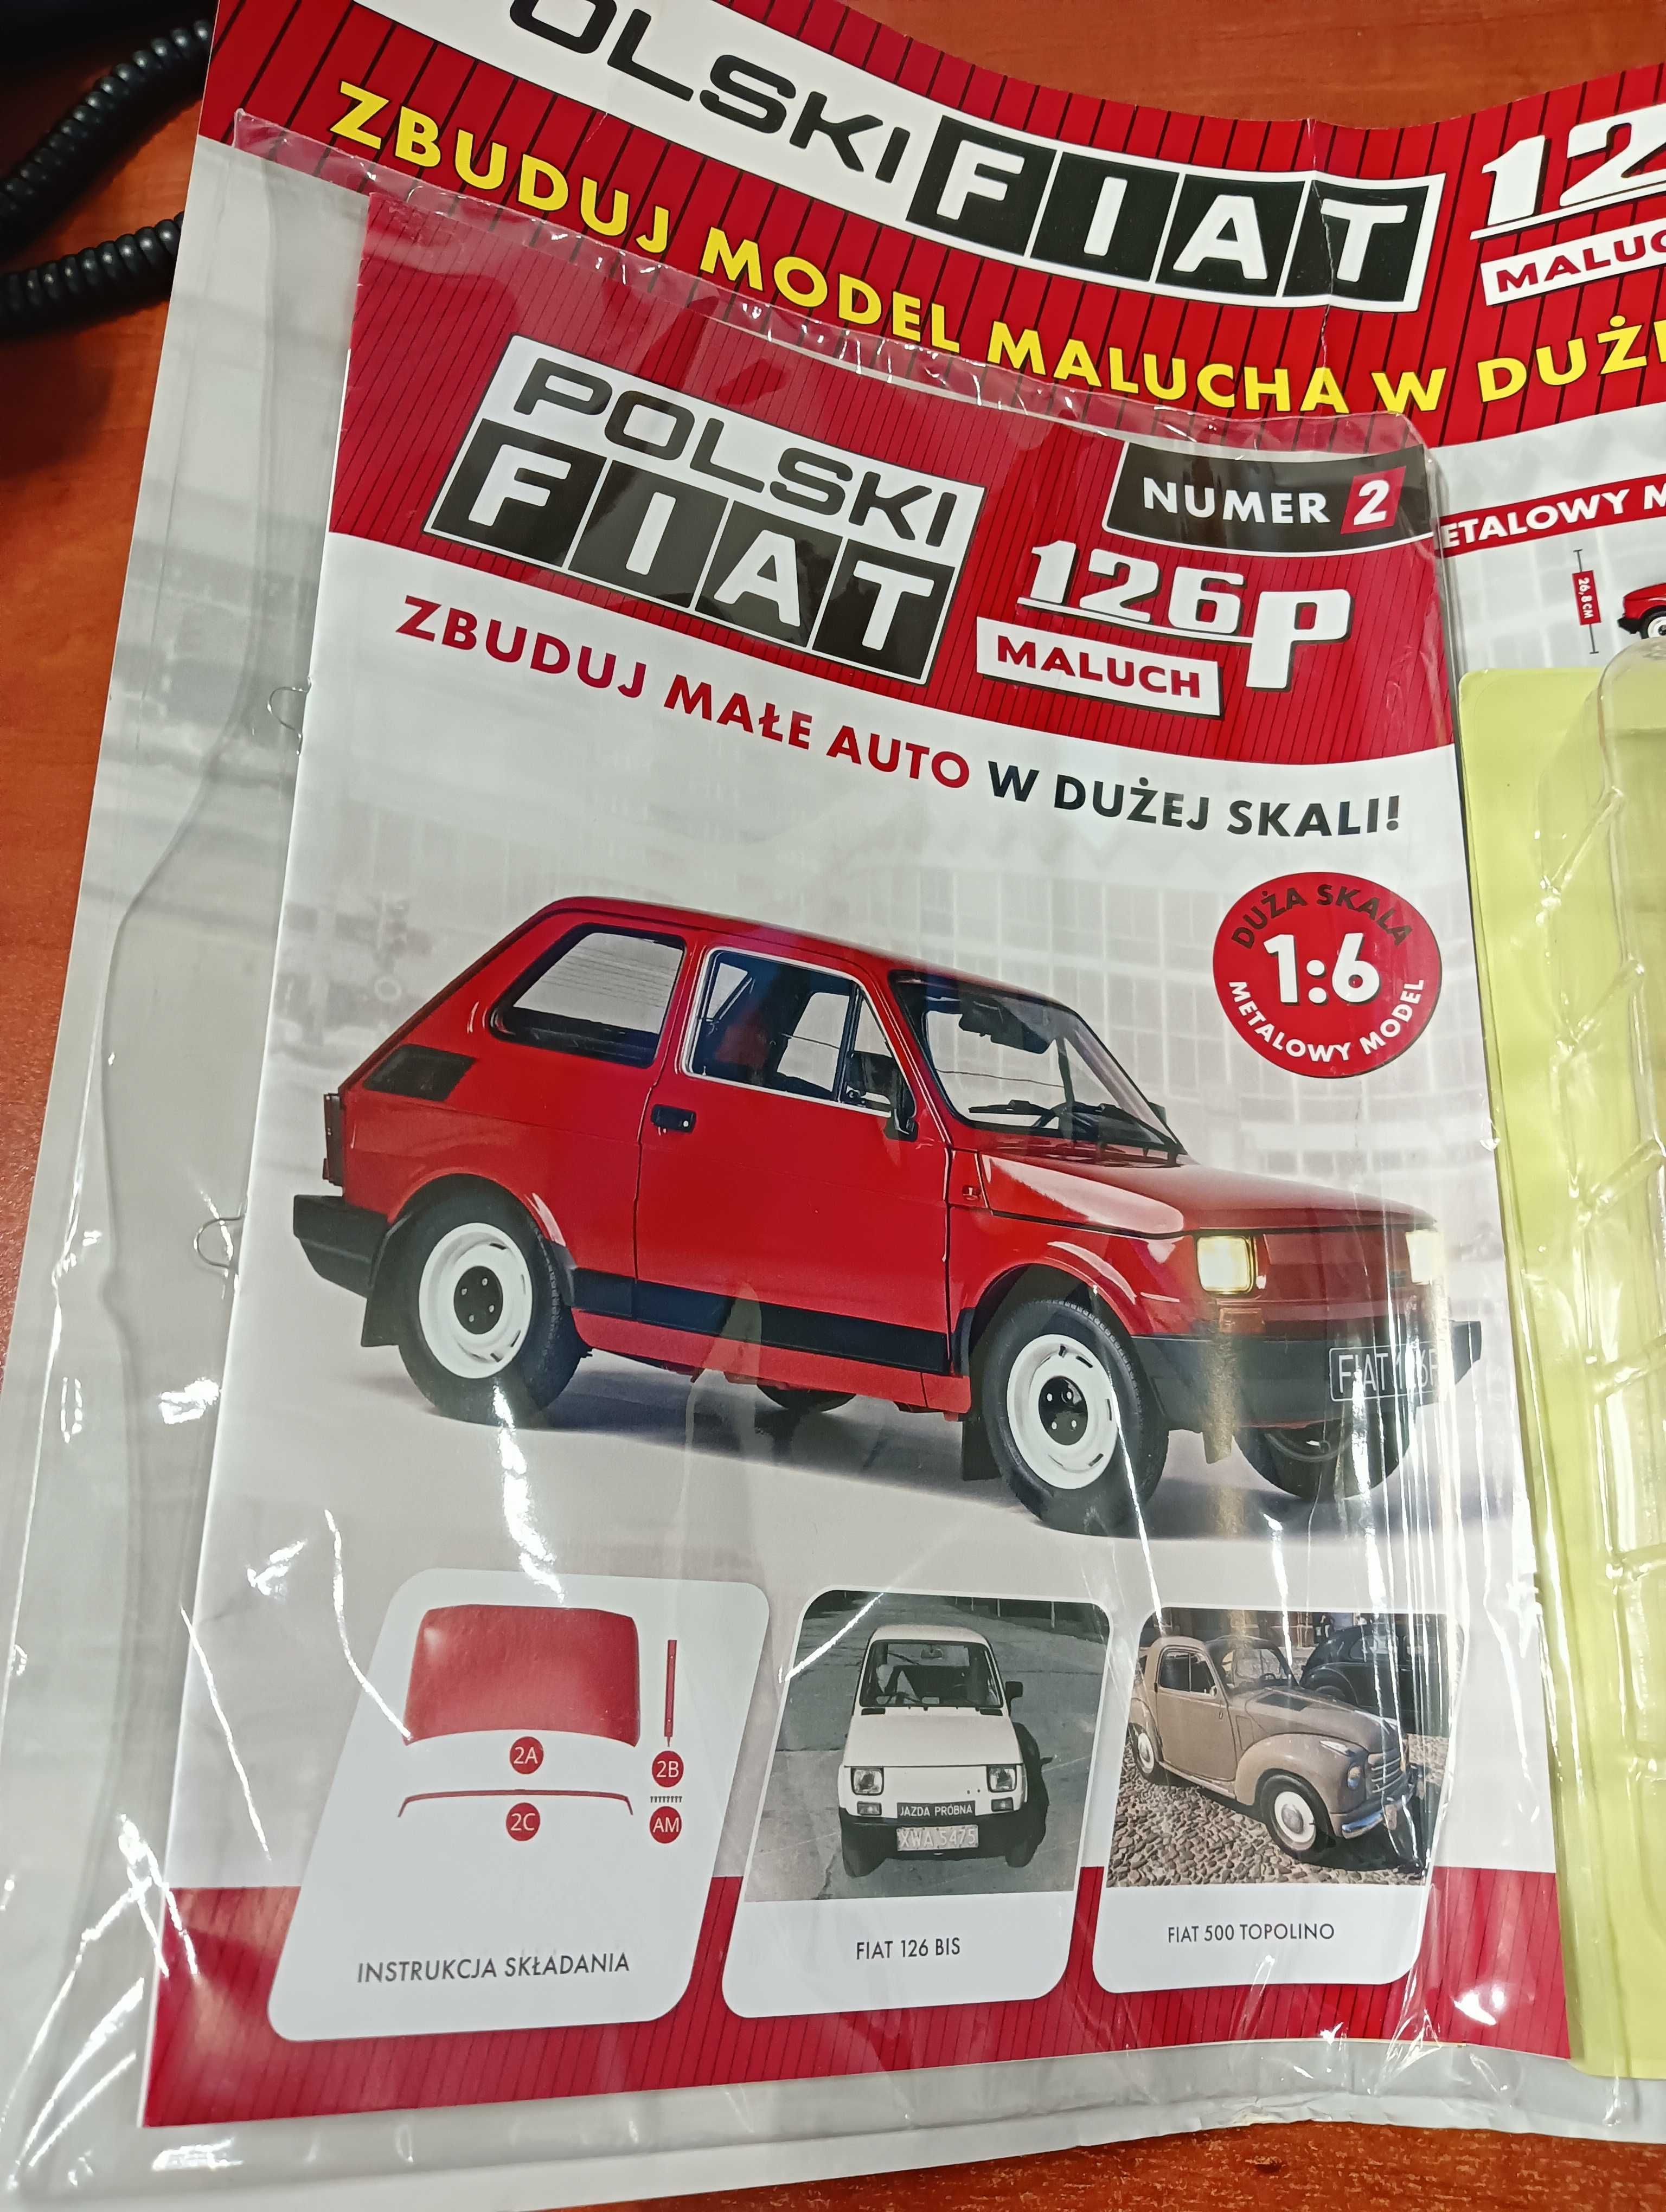 czasopisma Hachette Fiat 126 P - nr 3